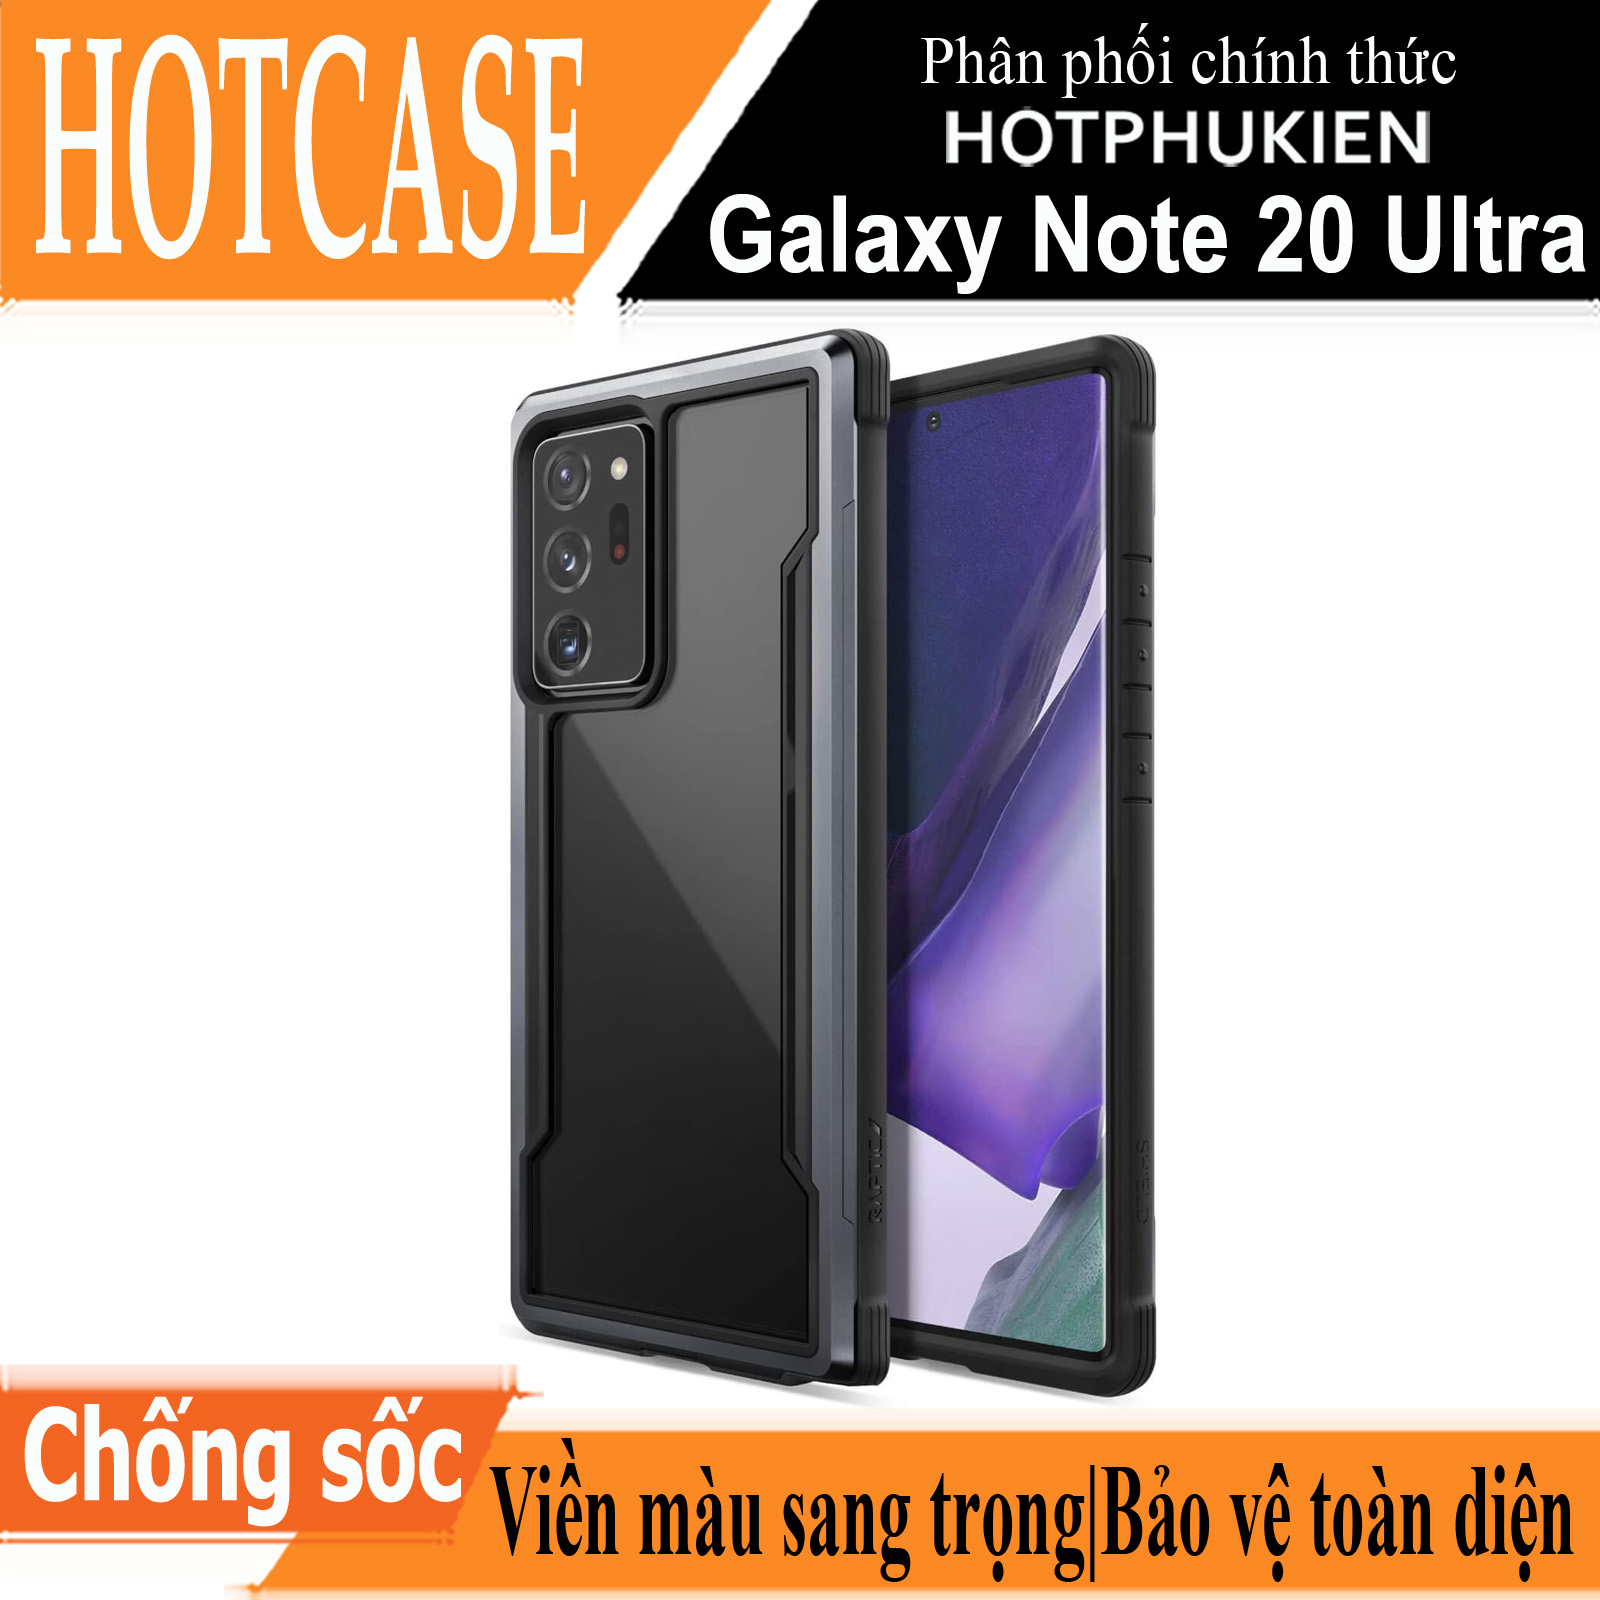 Ốp lưng chống sốc chống va đập cho Samsung Galaxy Note 20 Ultra hiệu HOTCASE X-doria Defense shield mặt lưng trong suốt, gờ bảo vệ Camera chống trầy xước